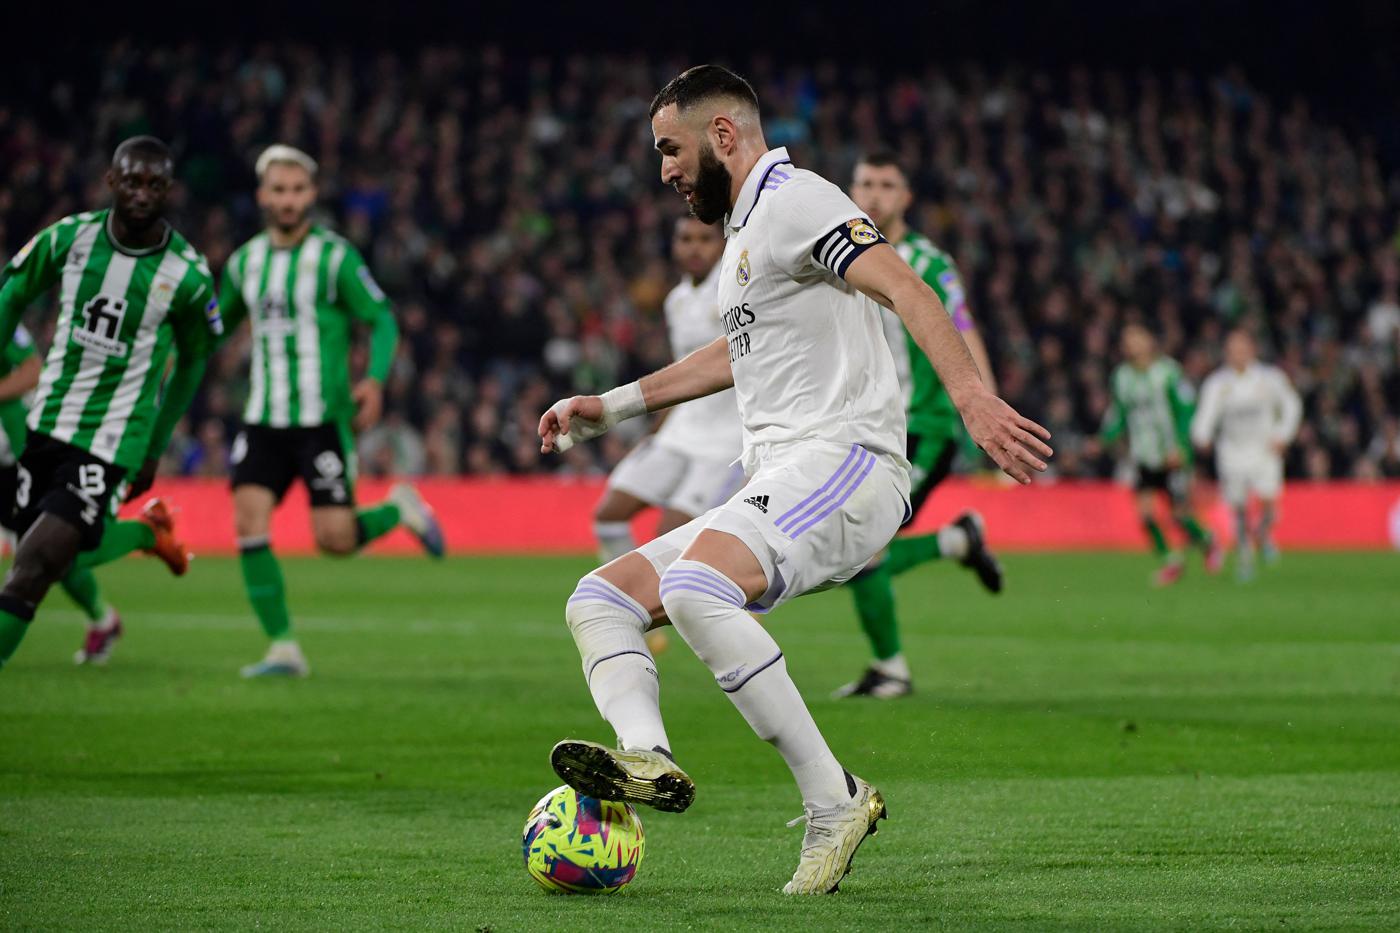 Betis - Real Madrid - 0:0. Spanische Meisterschaft, Runde 24. Spielbericht, Statistik.